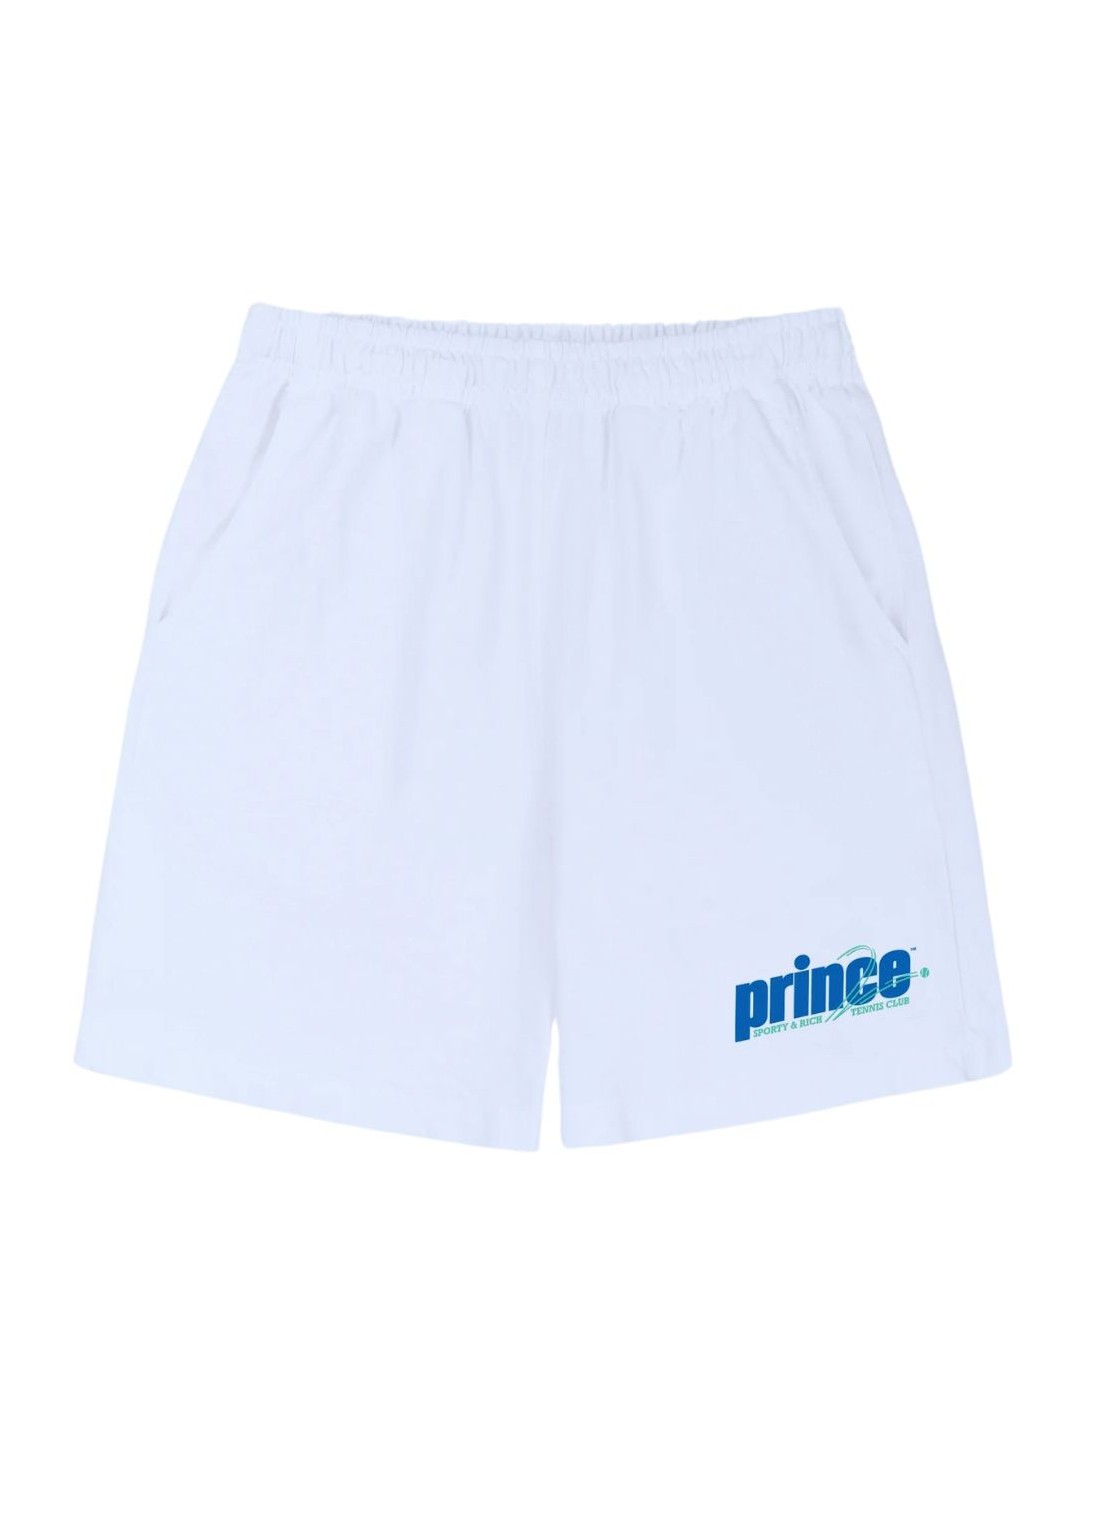 Pantalon corto sporty & rich short pant woman prince rebound gym shorts sh021s414rw white talla M
 